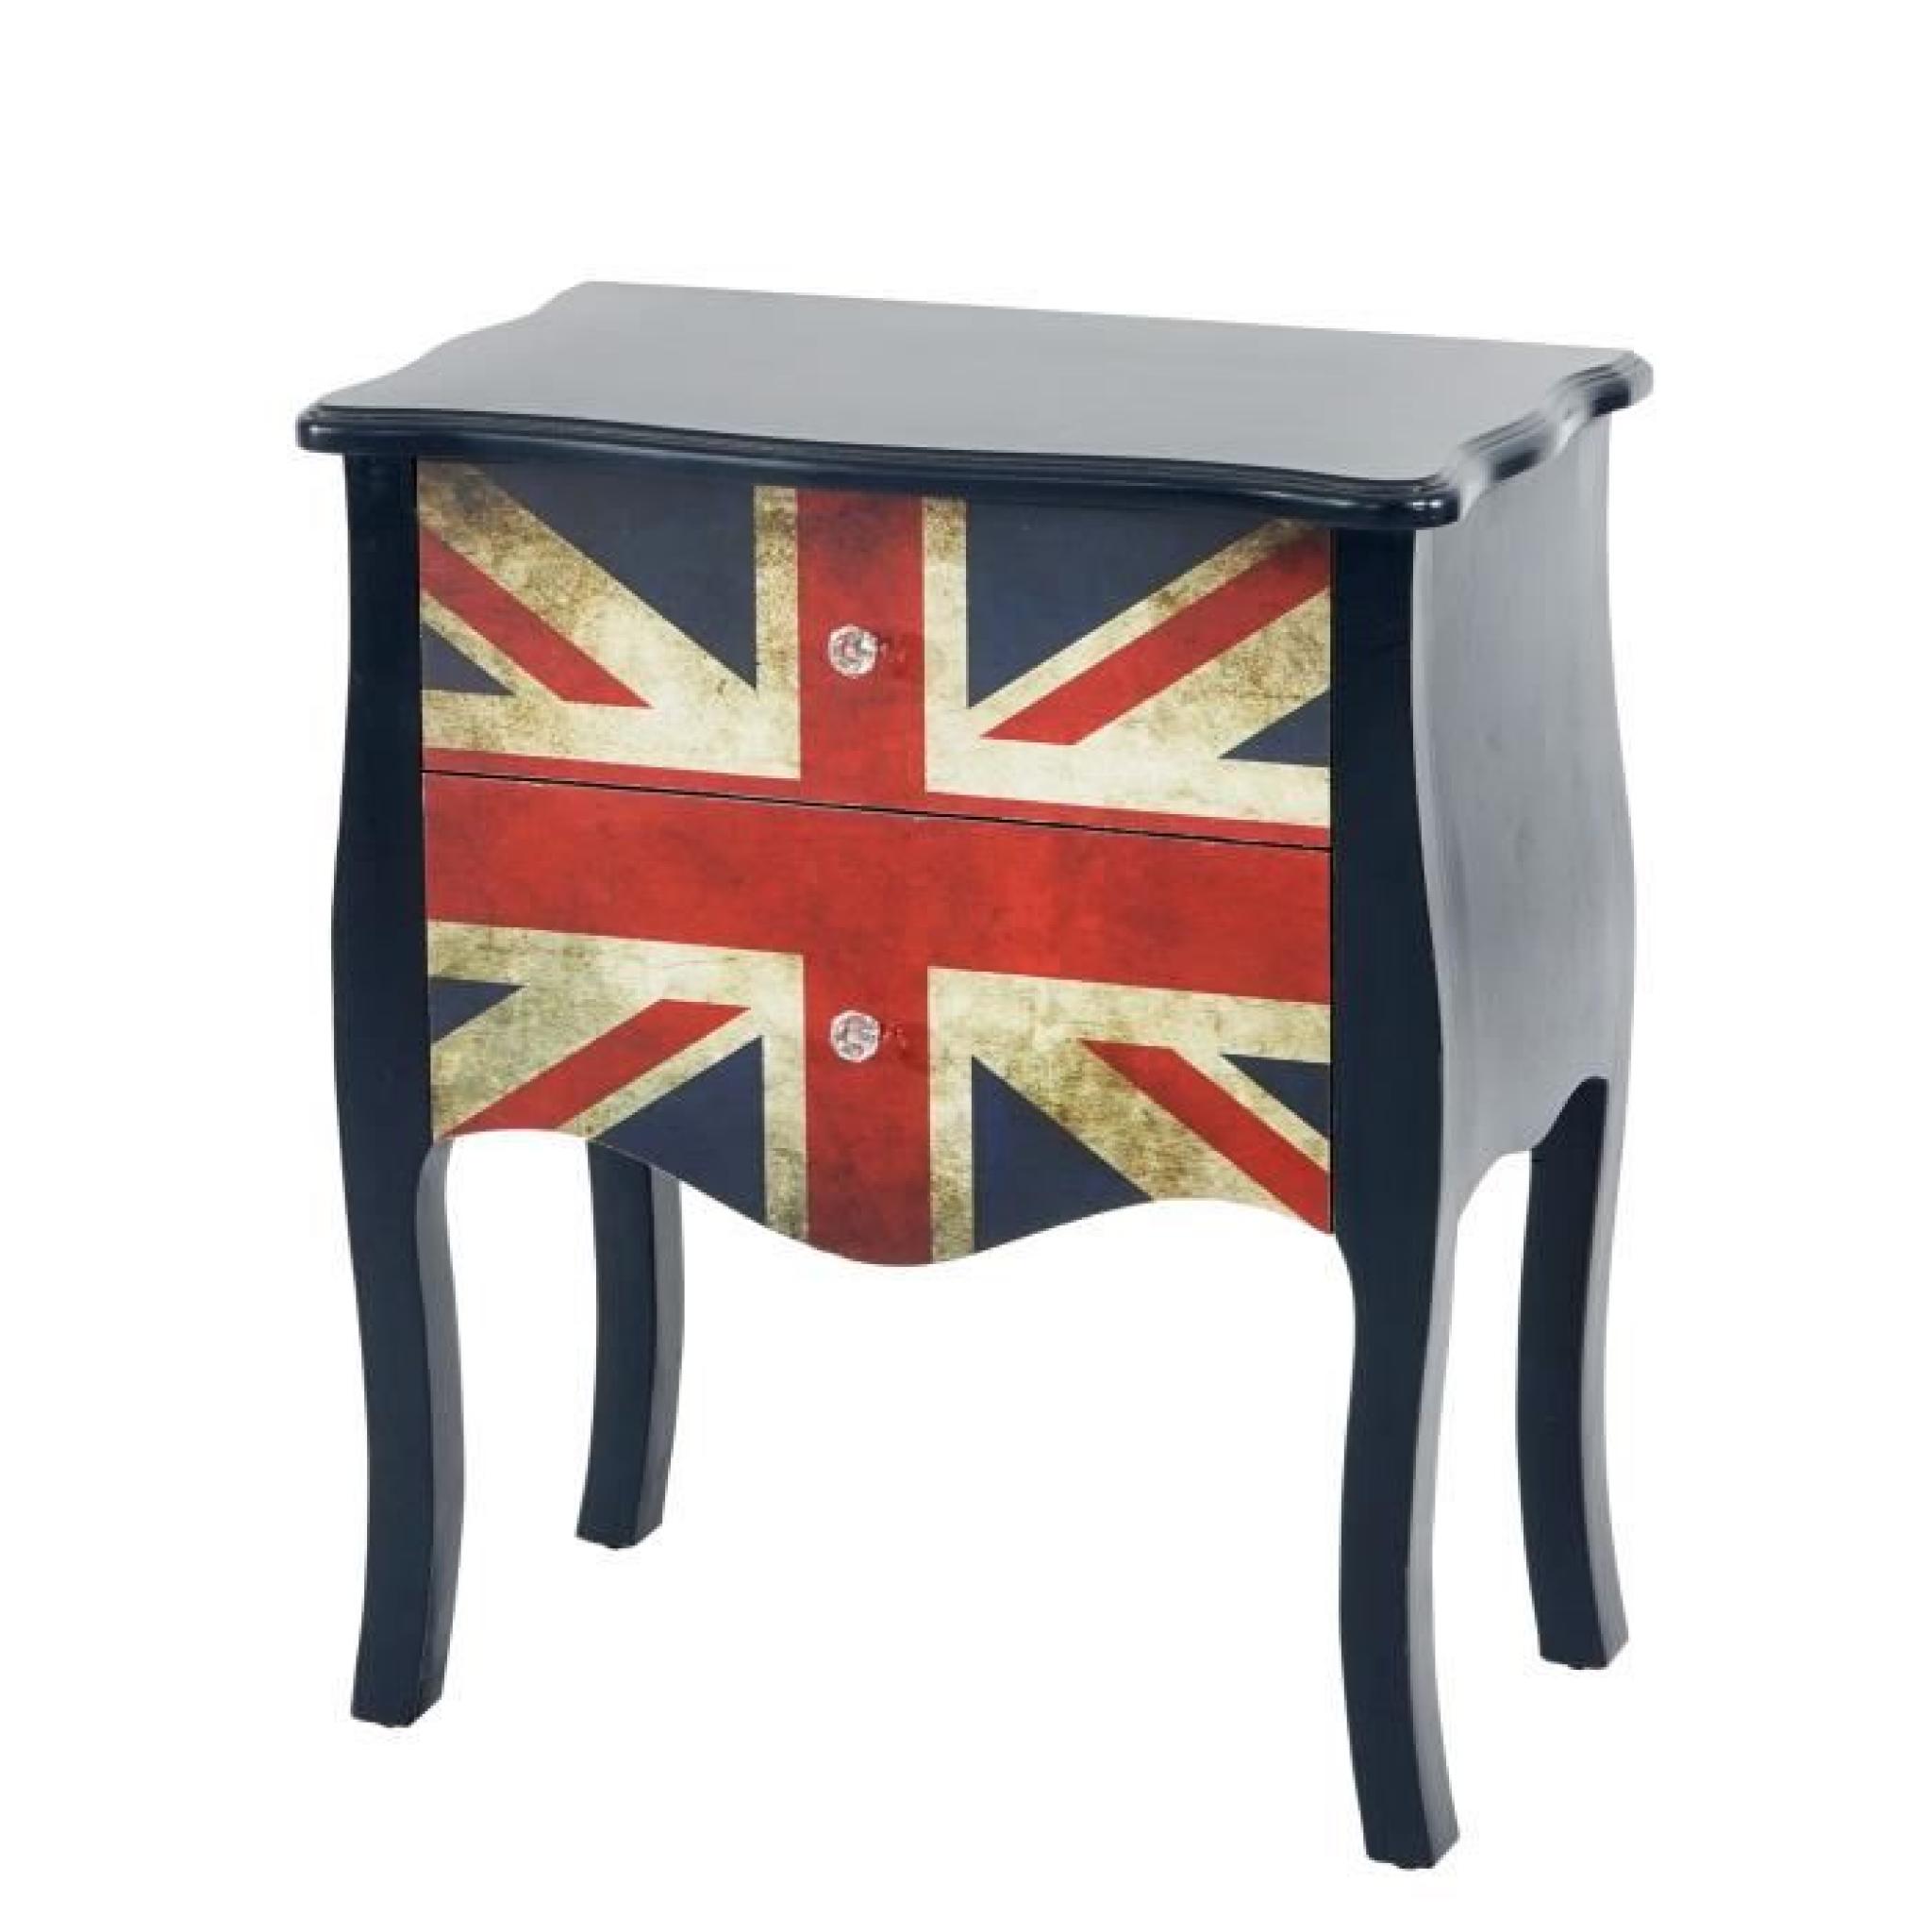 Commode Marne armoire table d'appoint chevet,70x60x36cm, motif Union Jack.